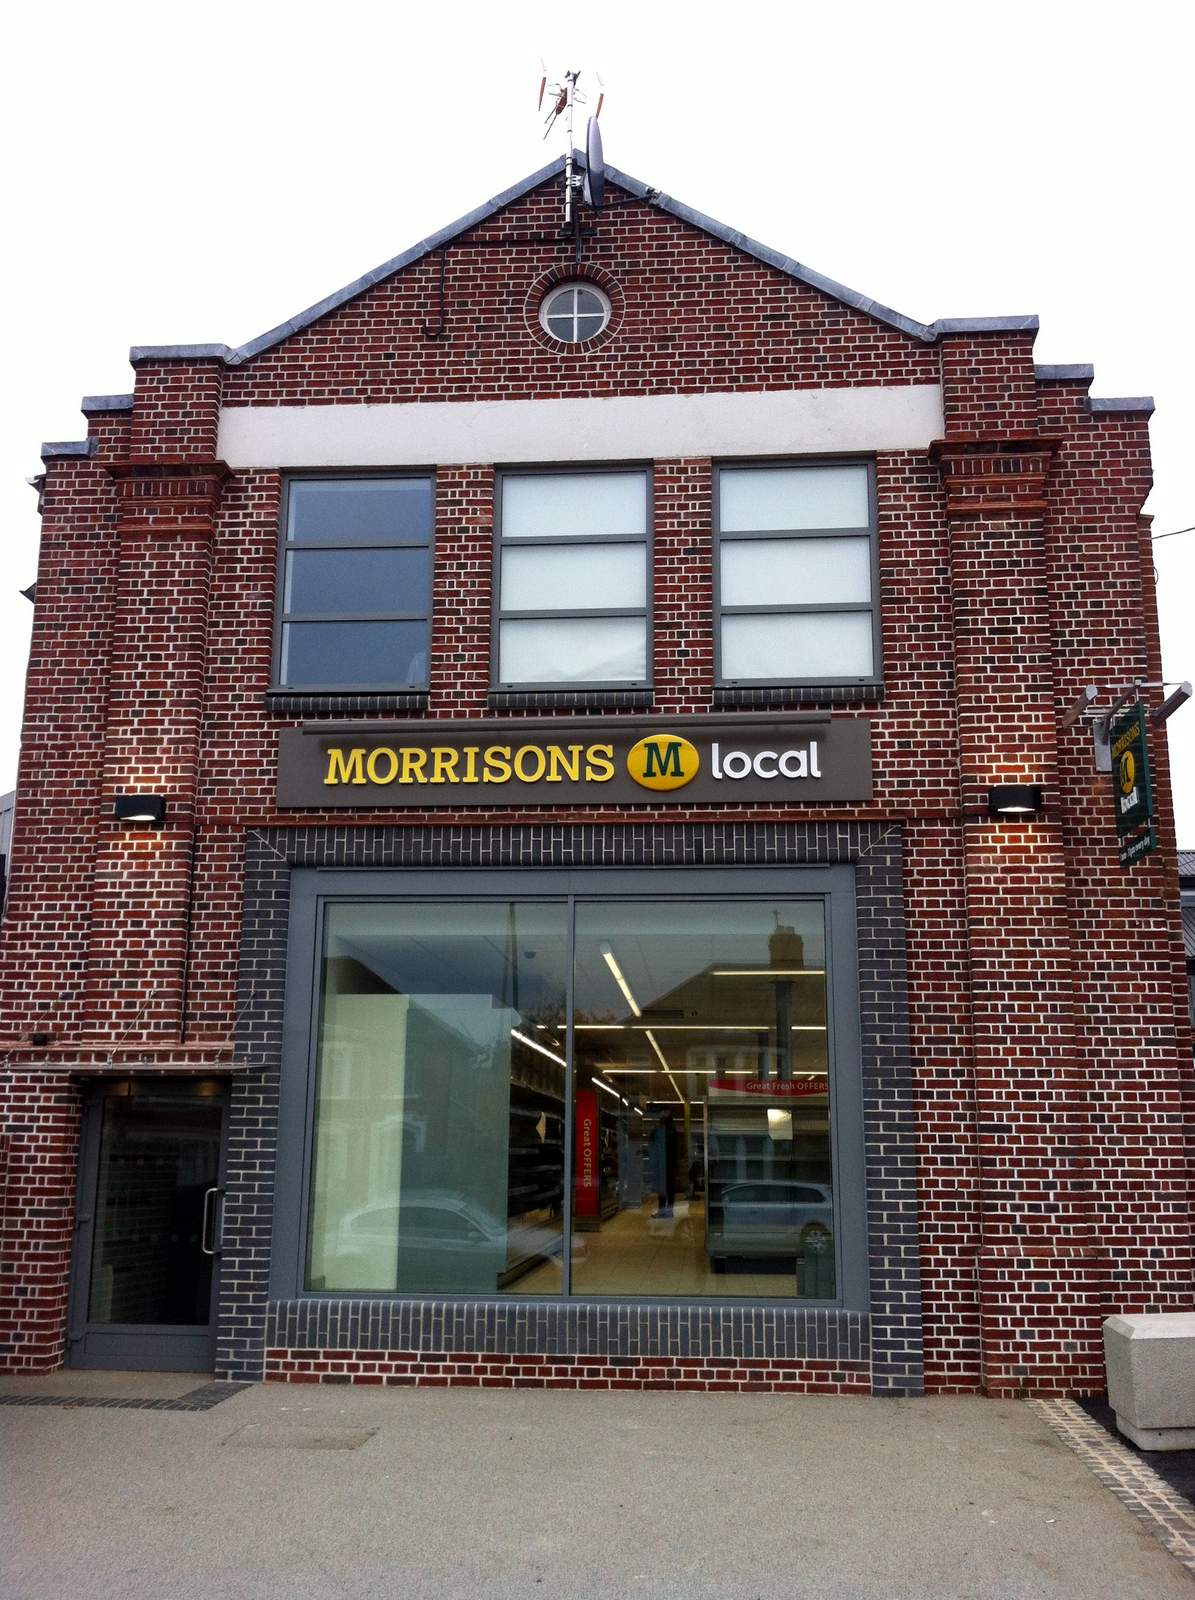 Morrisons convenience stores